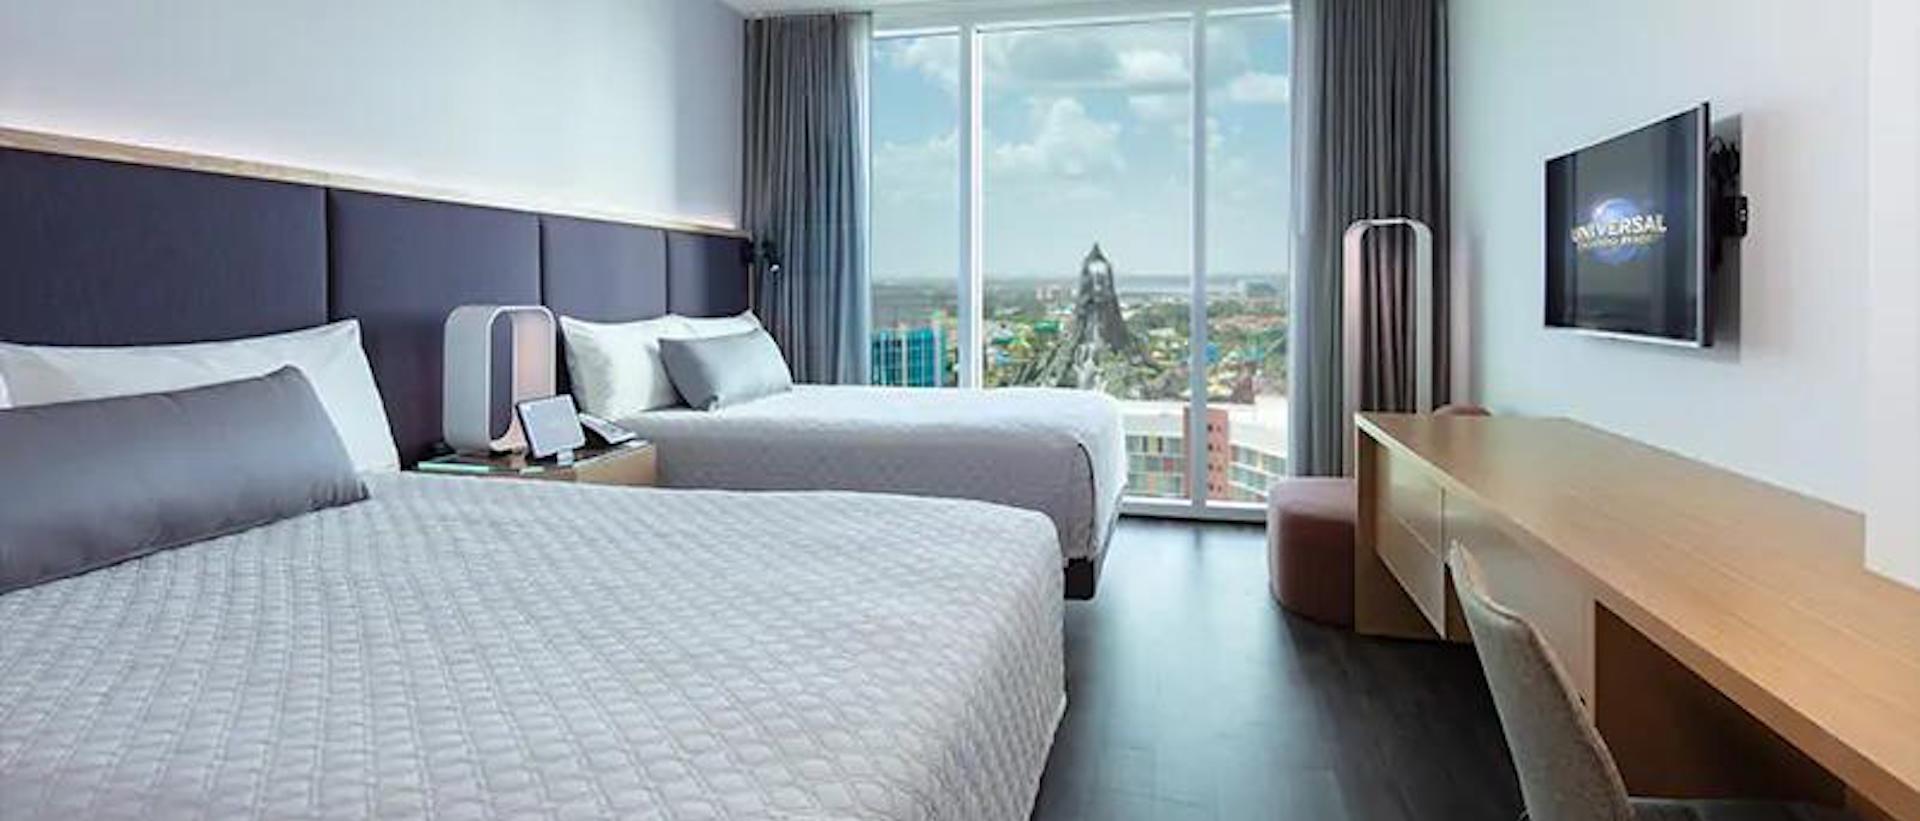 Universal's Aventura Hotel Standard Double Queen Room